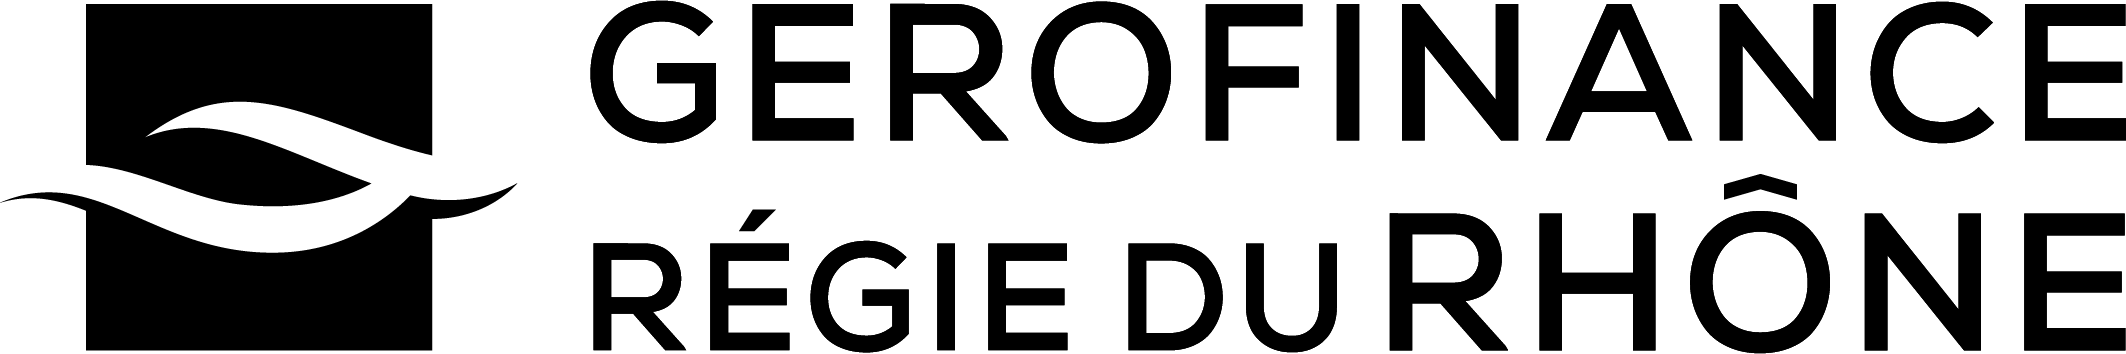 Logo GRR